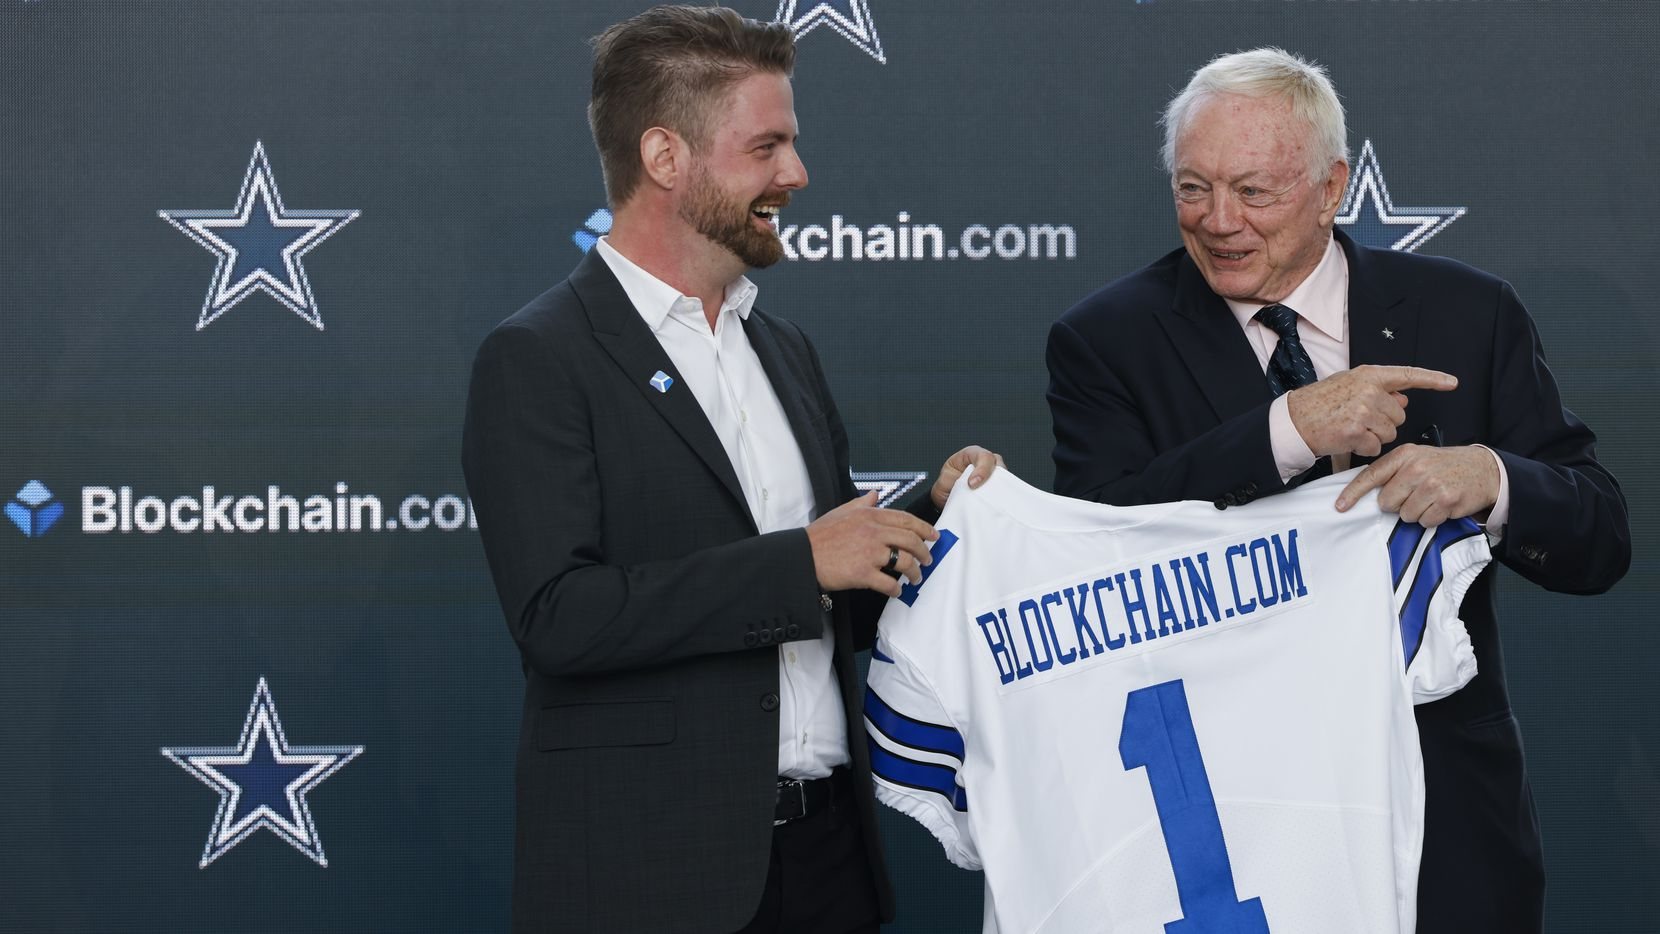 Los Dallas Cowboys firman un acuerdo con Blockchain.com mientras los equipos de la NFL comienzan a adoptar las criptomonedas